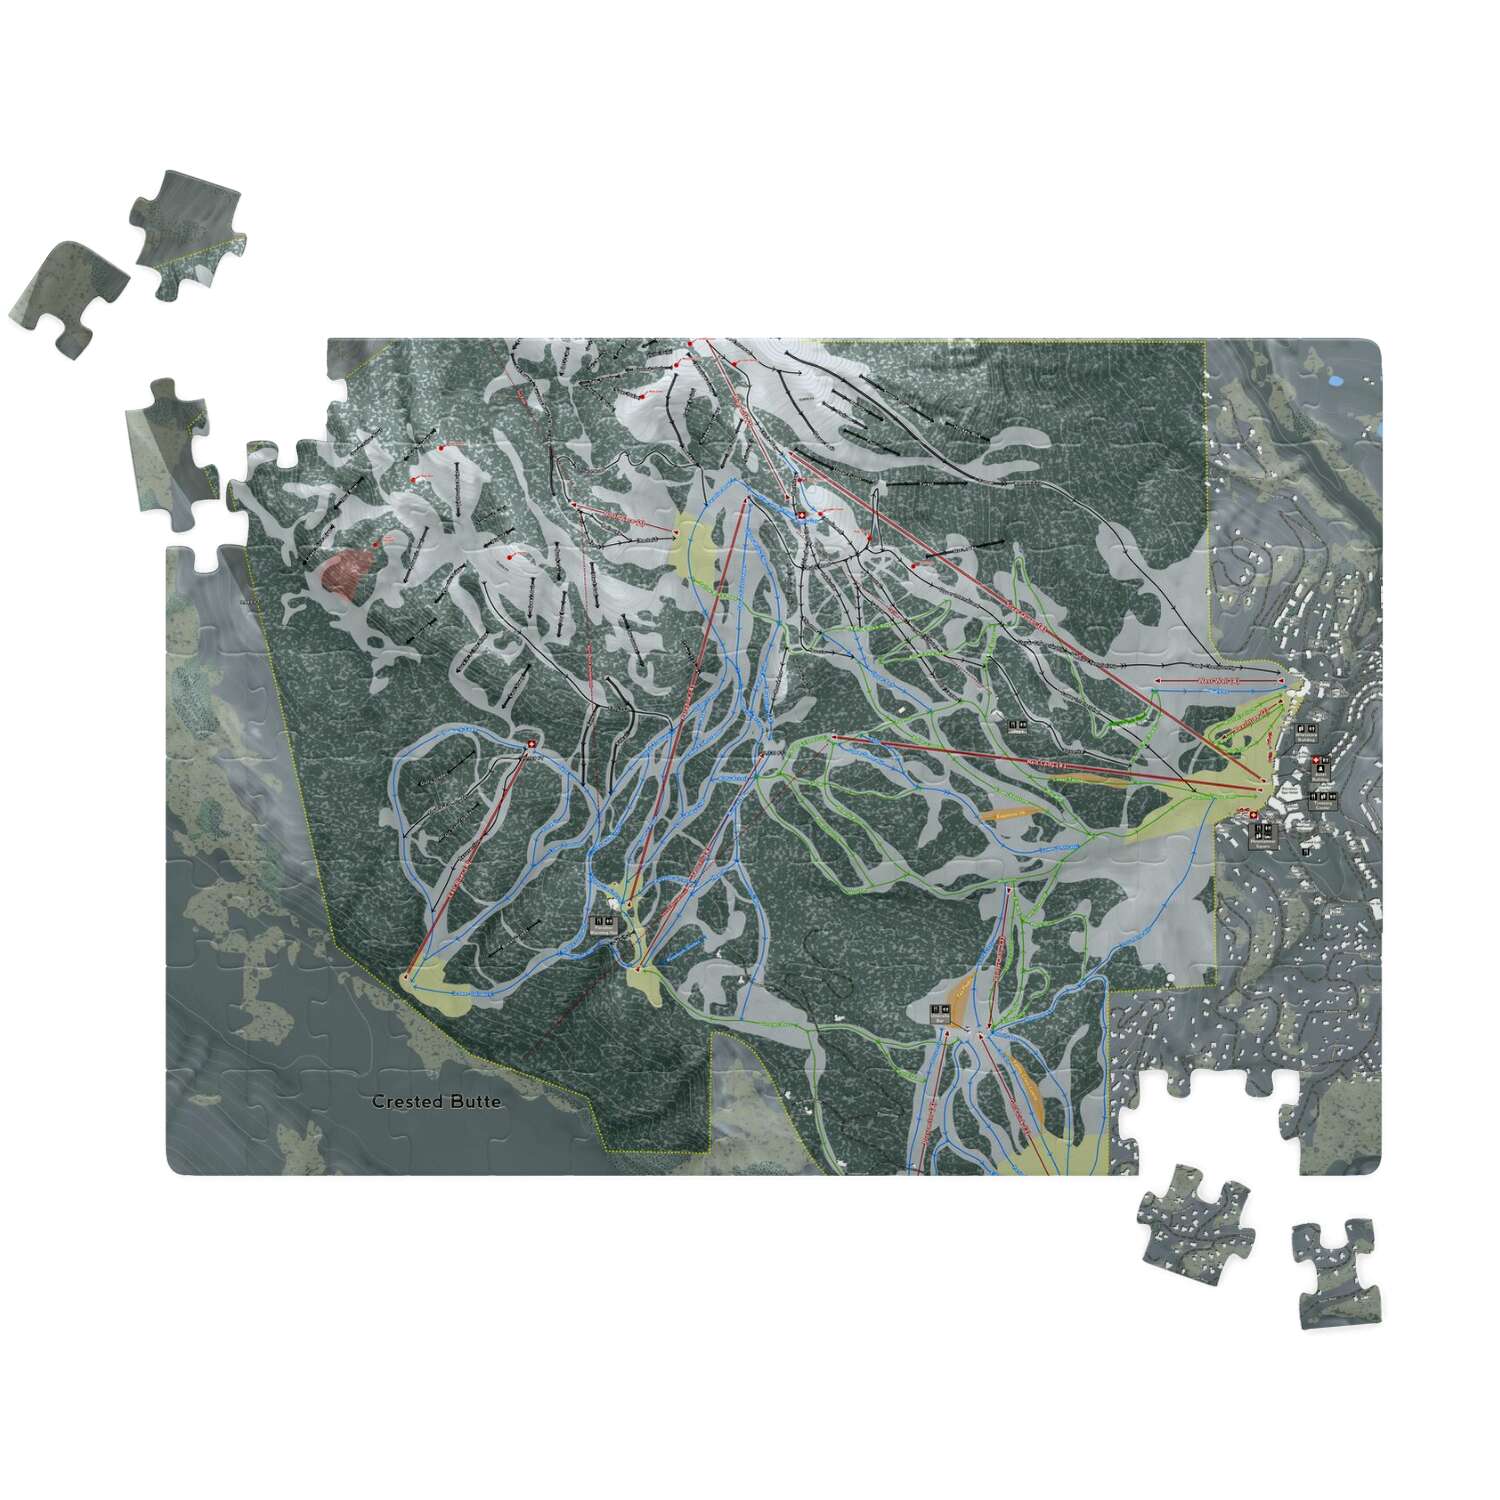 Crested Butte, Colorado Ski Trail Map Puzzles - Powderaddicts